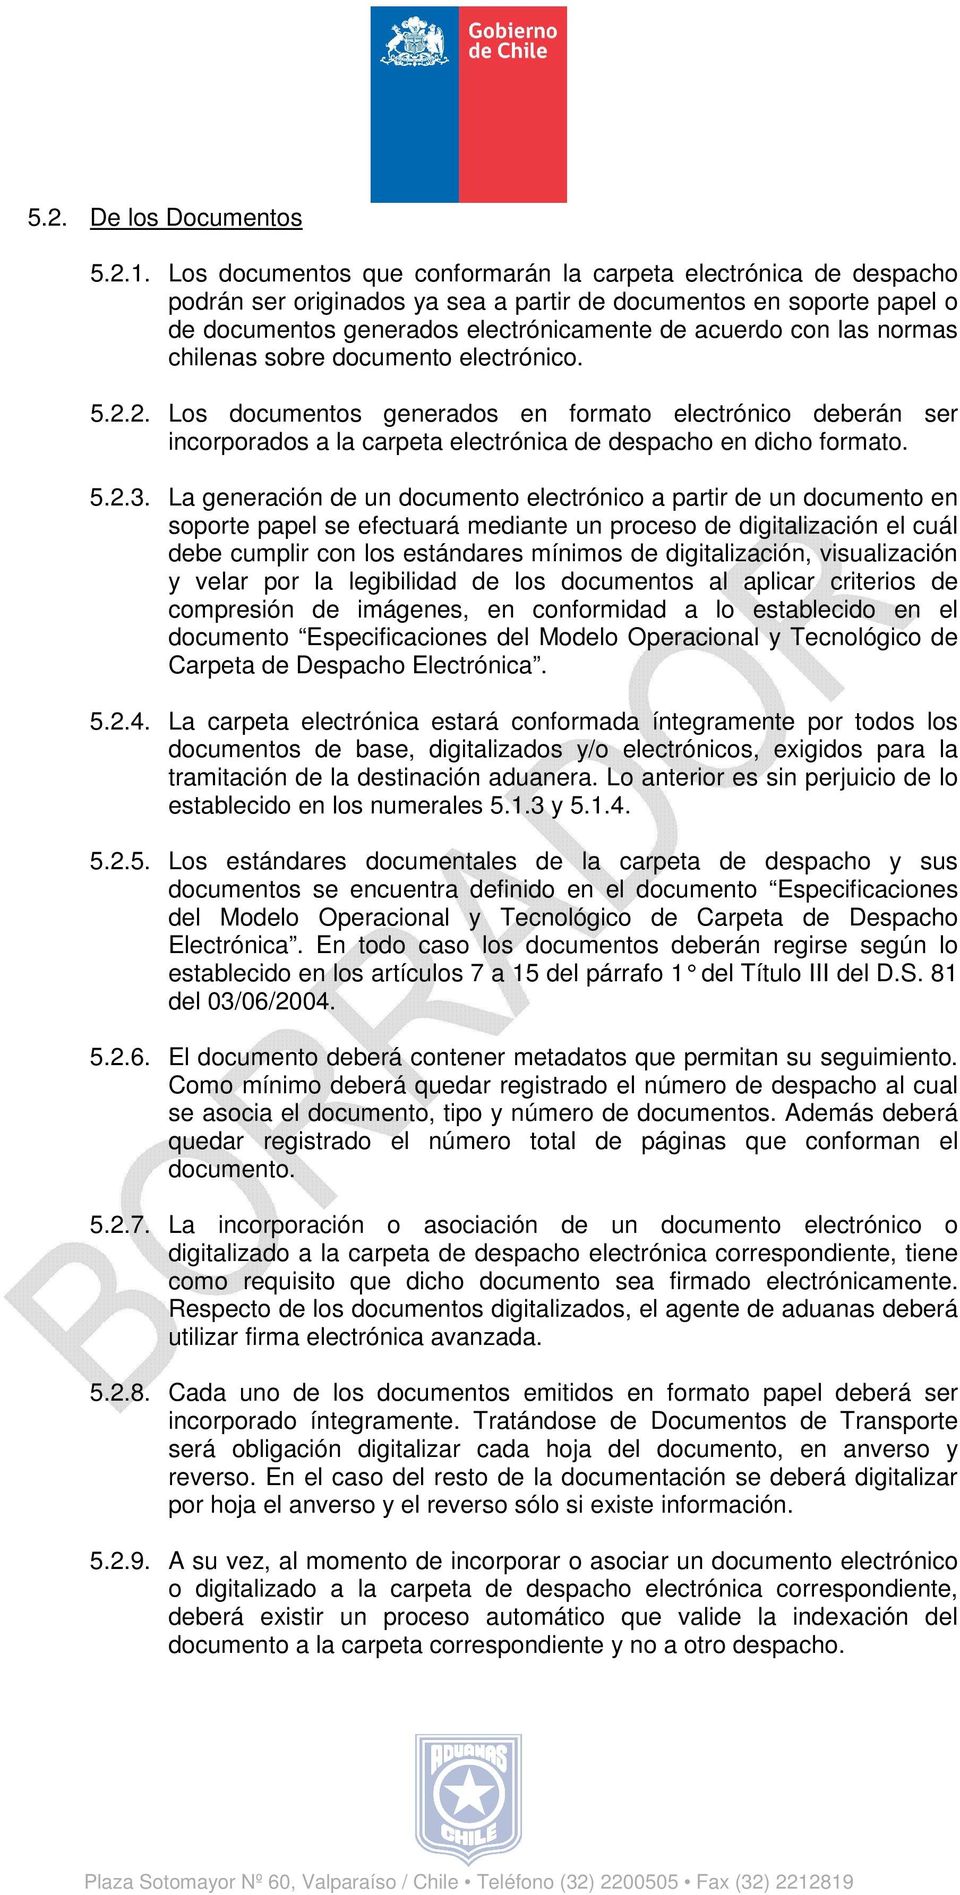 normas chilenas sobre documento electrónico. 5.2.2. Los documentos generados en formato electrónico deberán ser incorporados a la carpeta electrónica de despacho en dicho formato. 5.2.3.